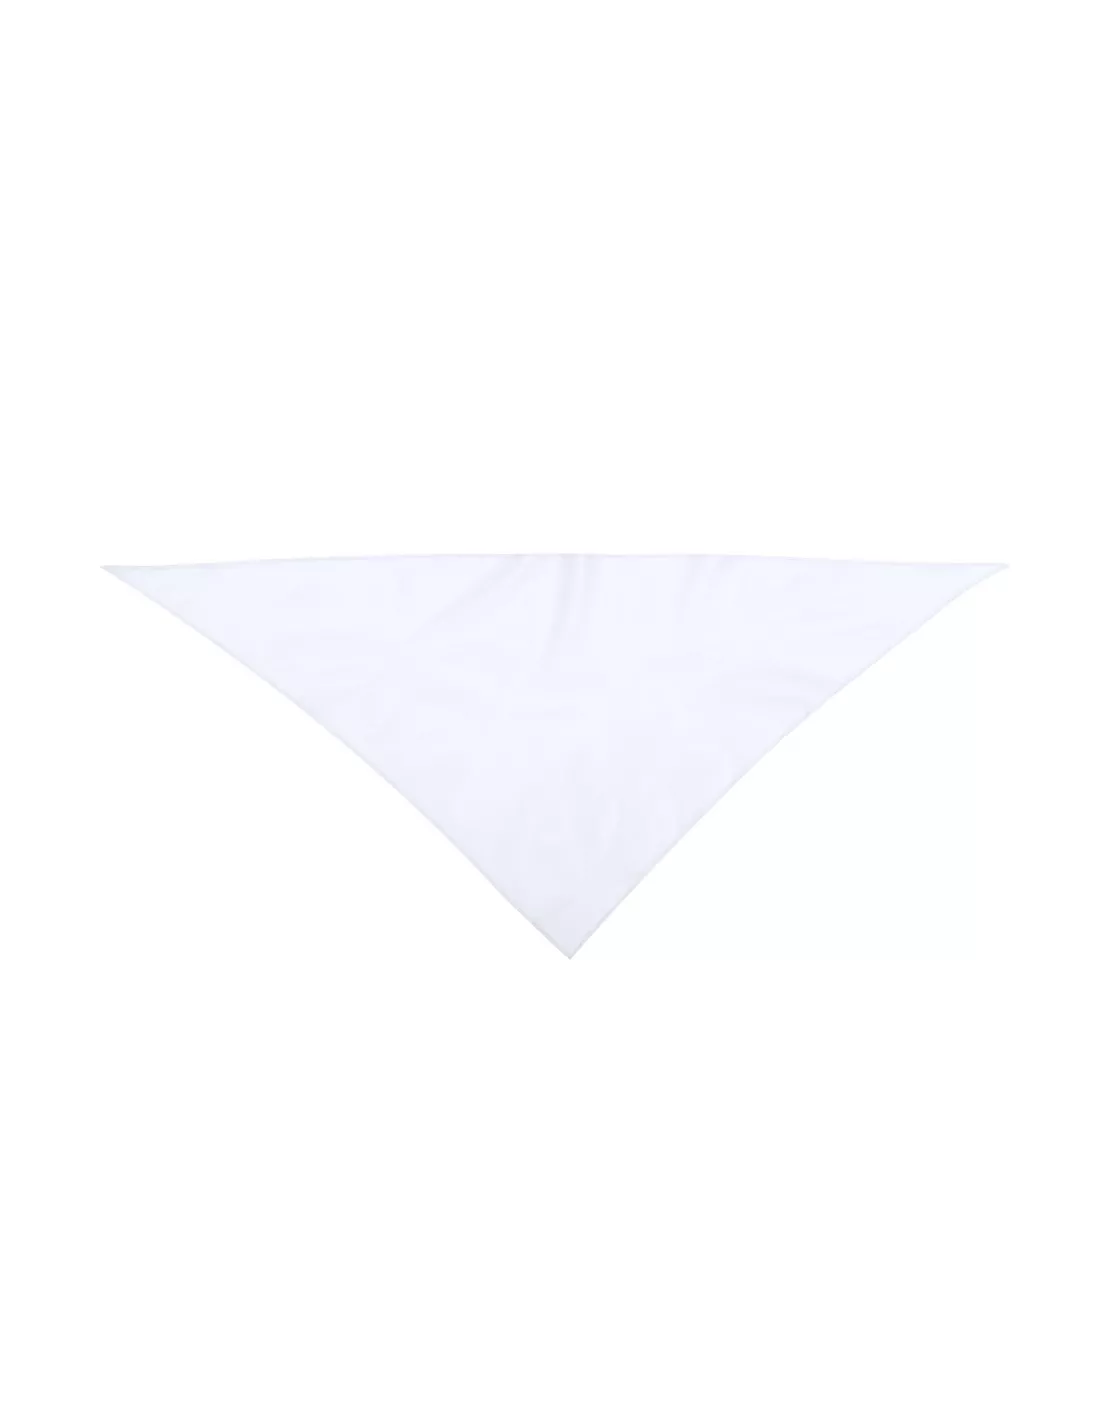 Pañoleta Triangular Personalizada de color blanco, para personalizar con tu logo